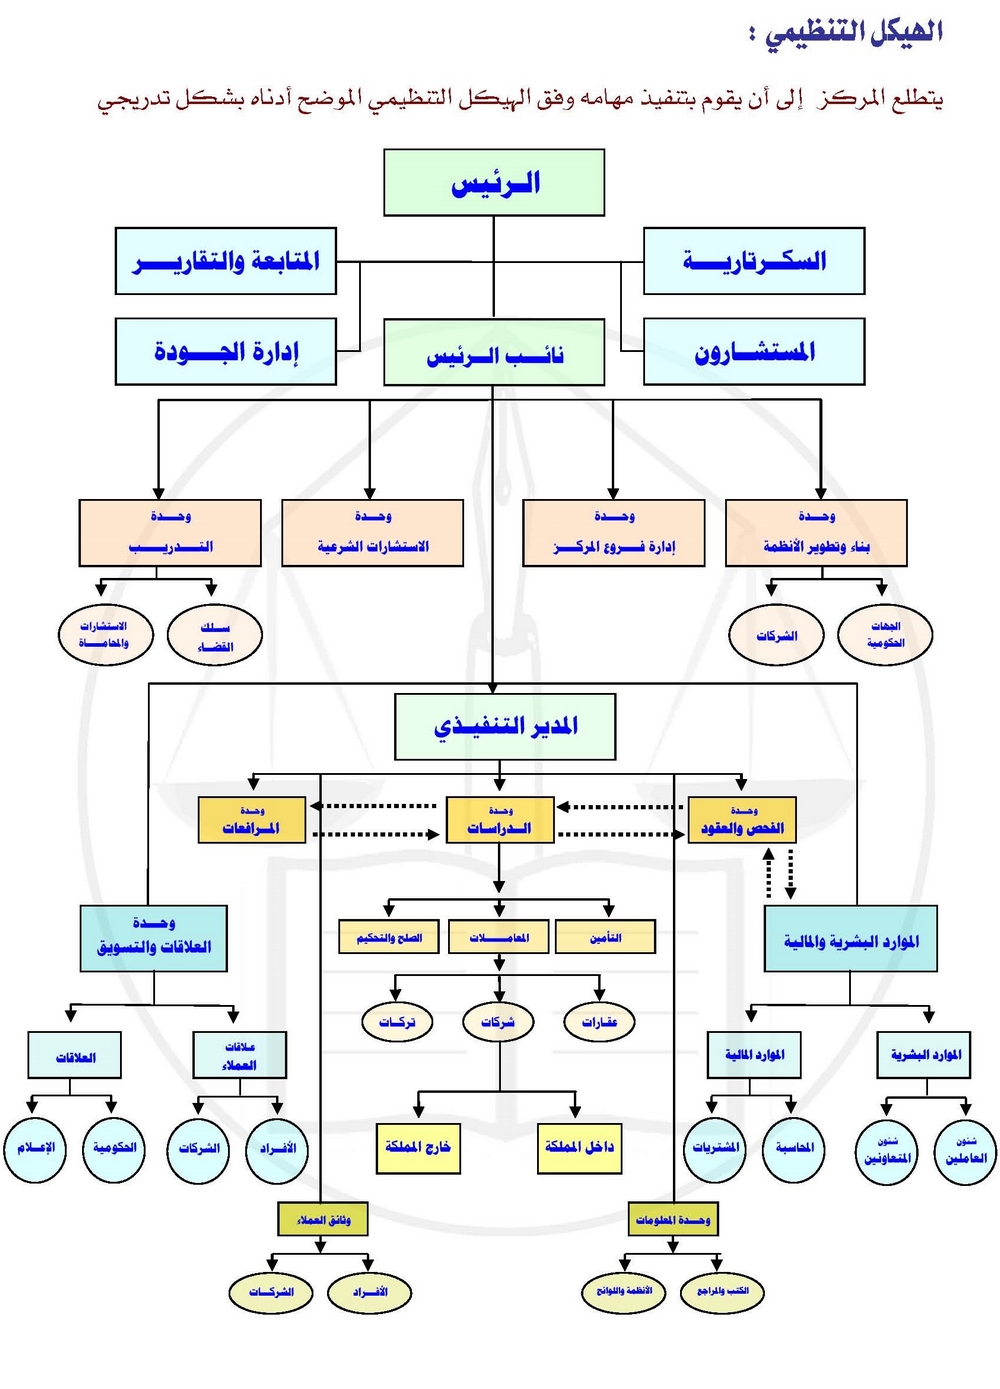 الهيكل التنظيمي مركز المستشار د. محمد بن راشد الهزاني